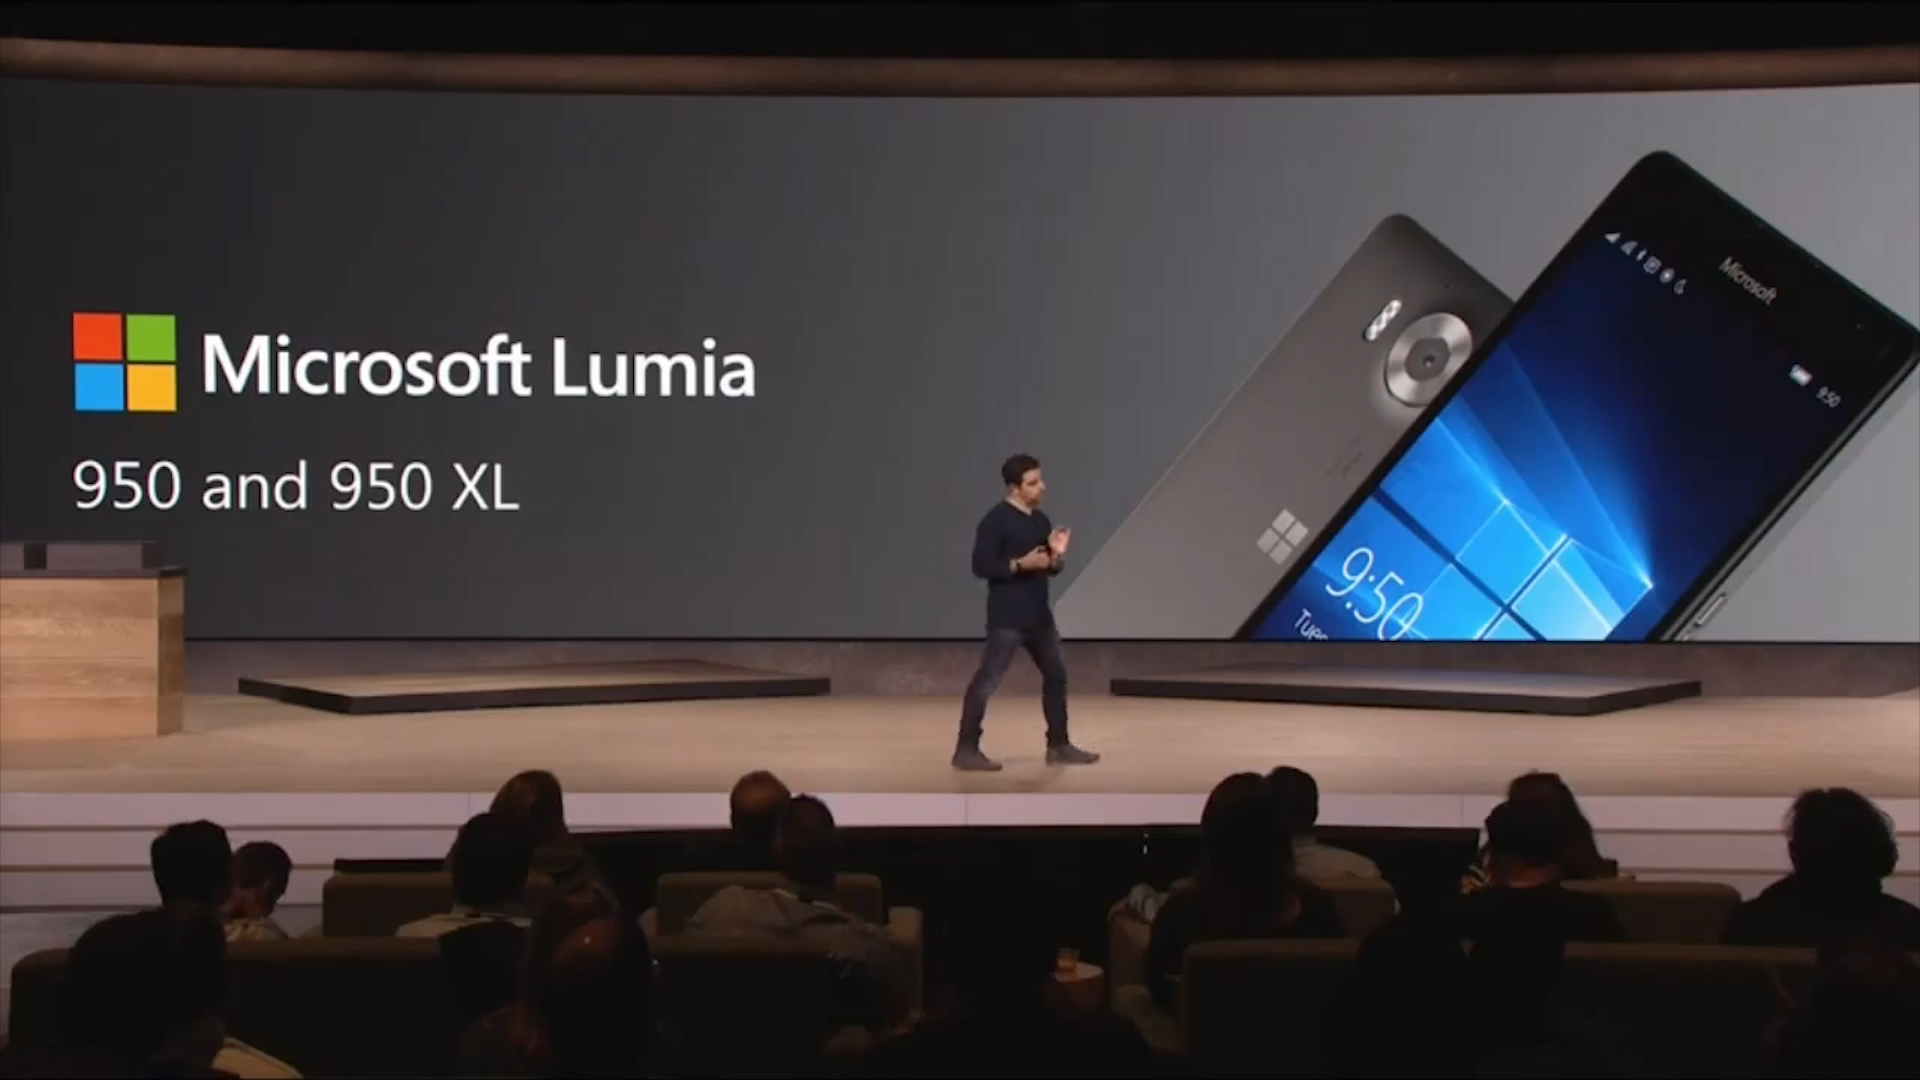 La presentazione dei prodotti Microsoft Nokia Lumia 950 e 950 XL, in arrivo a novembre